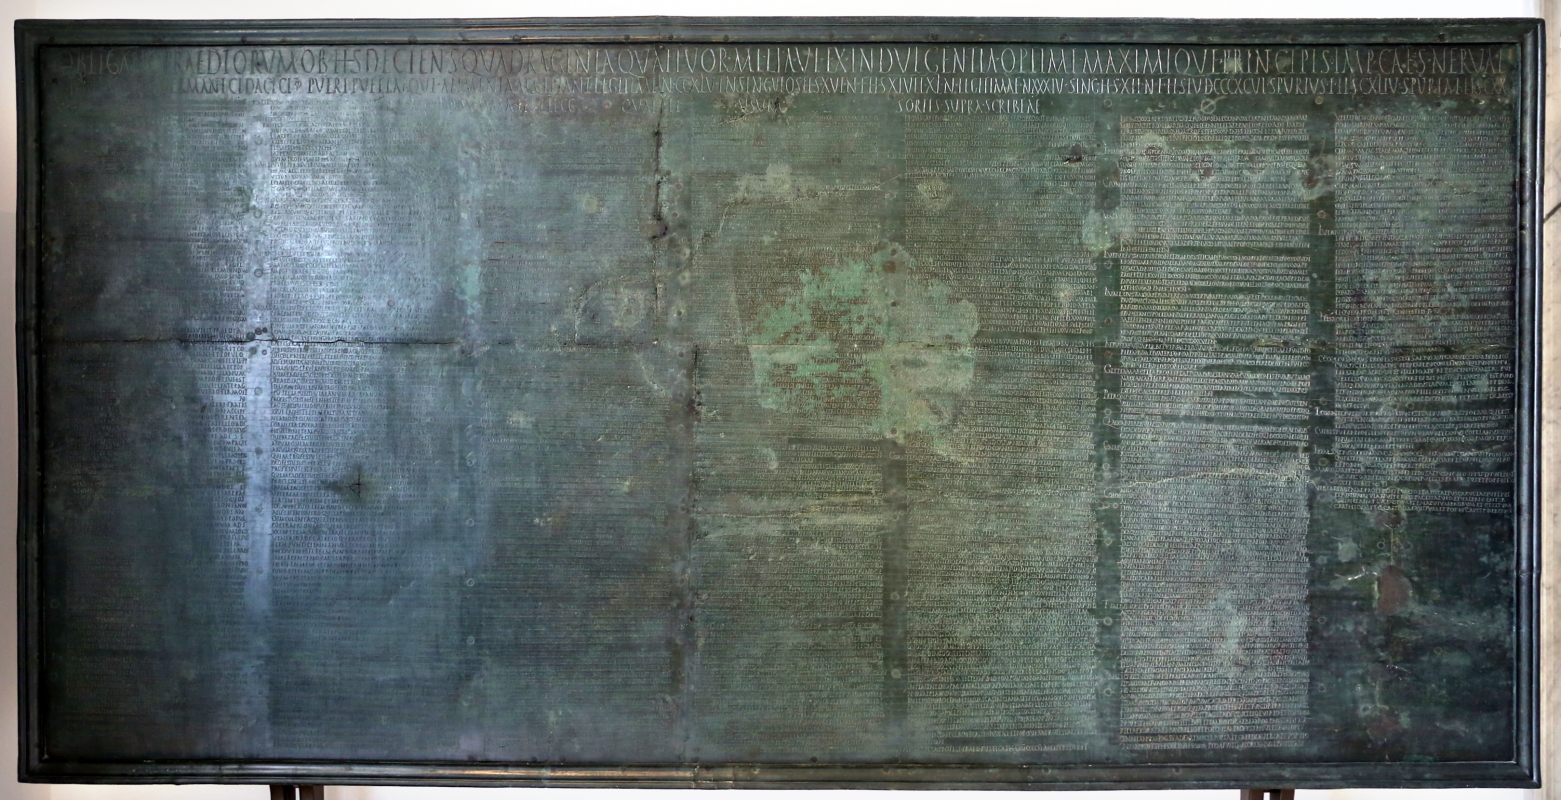 Tabula alimentaria per un prestito ipotecario imperiale, da veleia, II secolo, 01 - Sailko